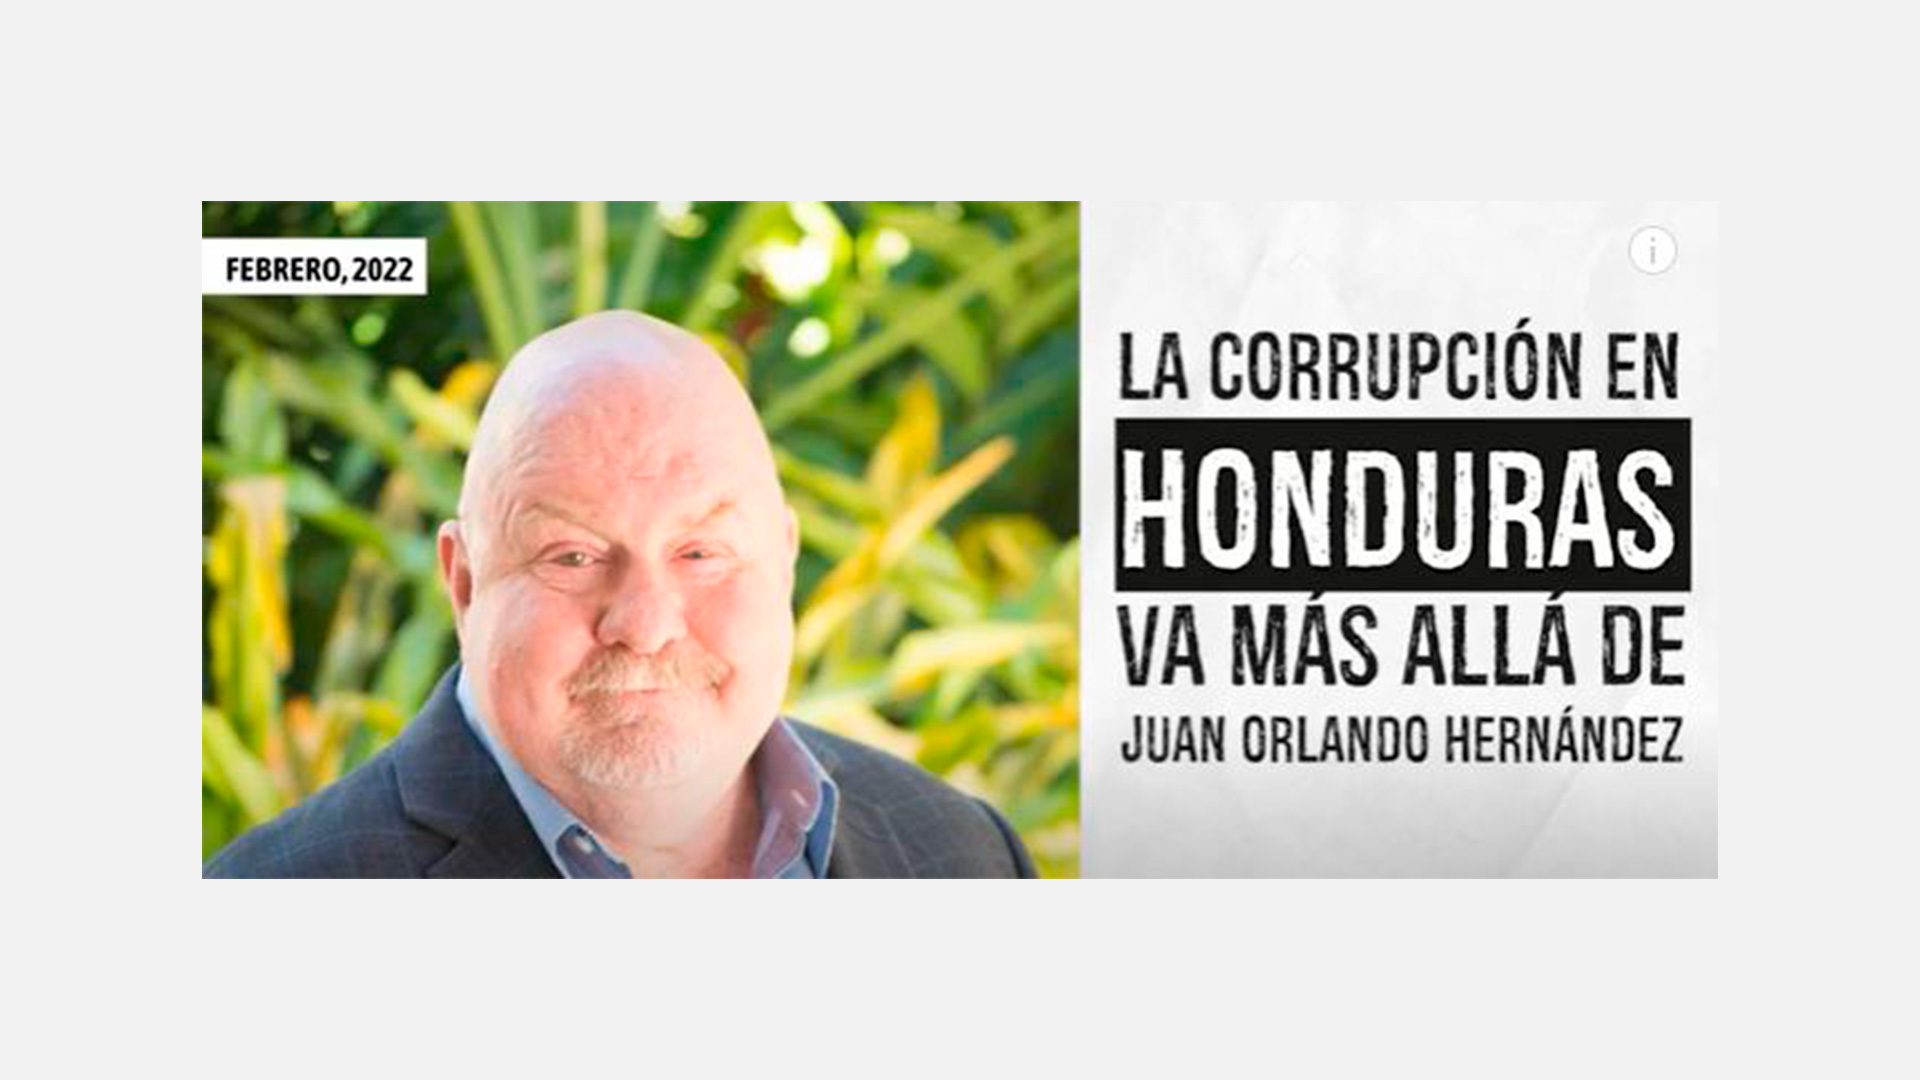 “La corrupción en Honduras va más allá de Juan Orlando Hernández”